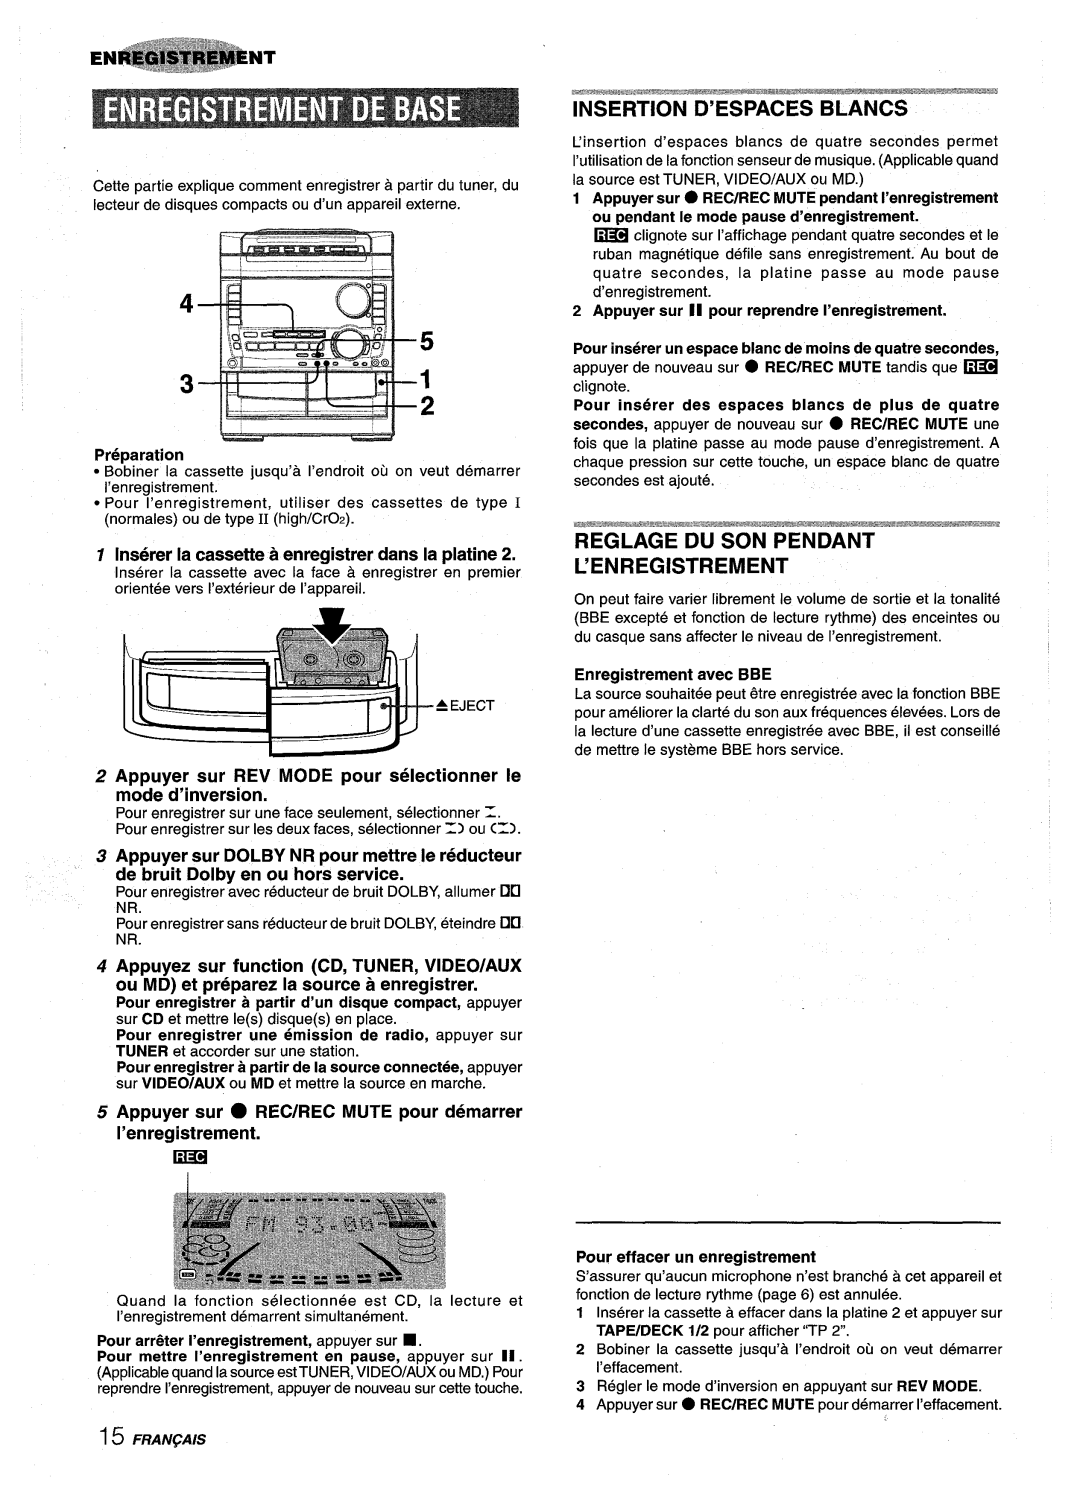 Sony NSX-A959 Insertion D’Espaces Blancs, Reglage Du Son Pendant L’Enregistrement, Enregistrement avec BBE, Preparation 